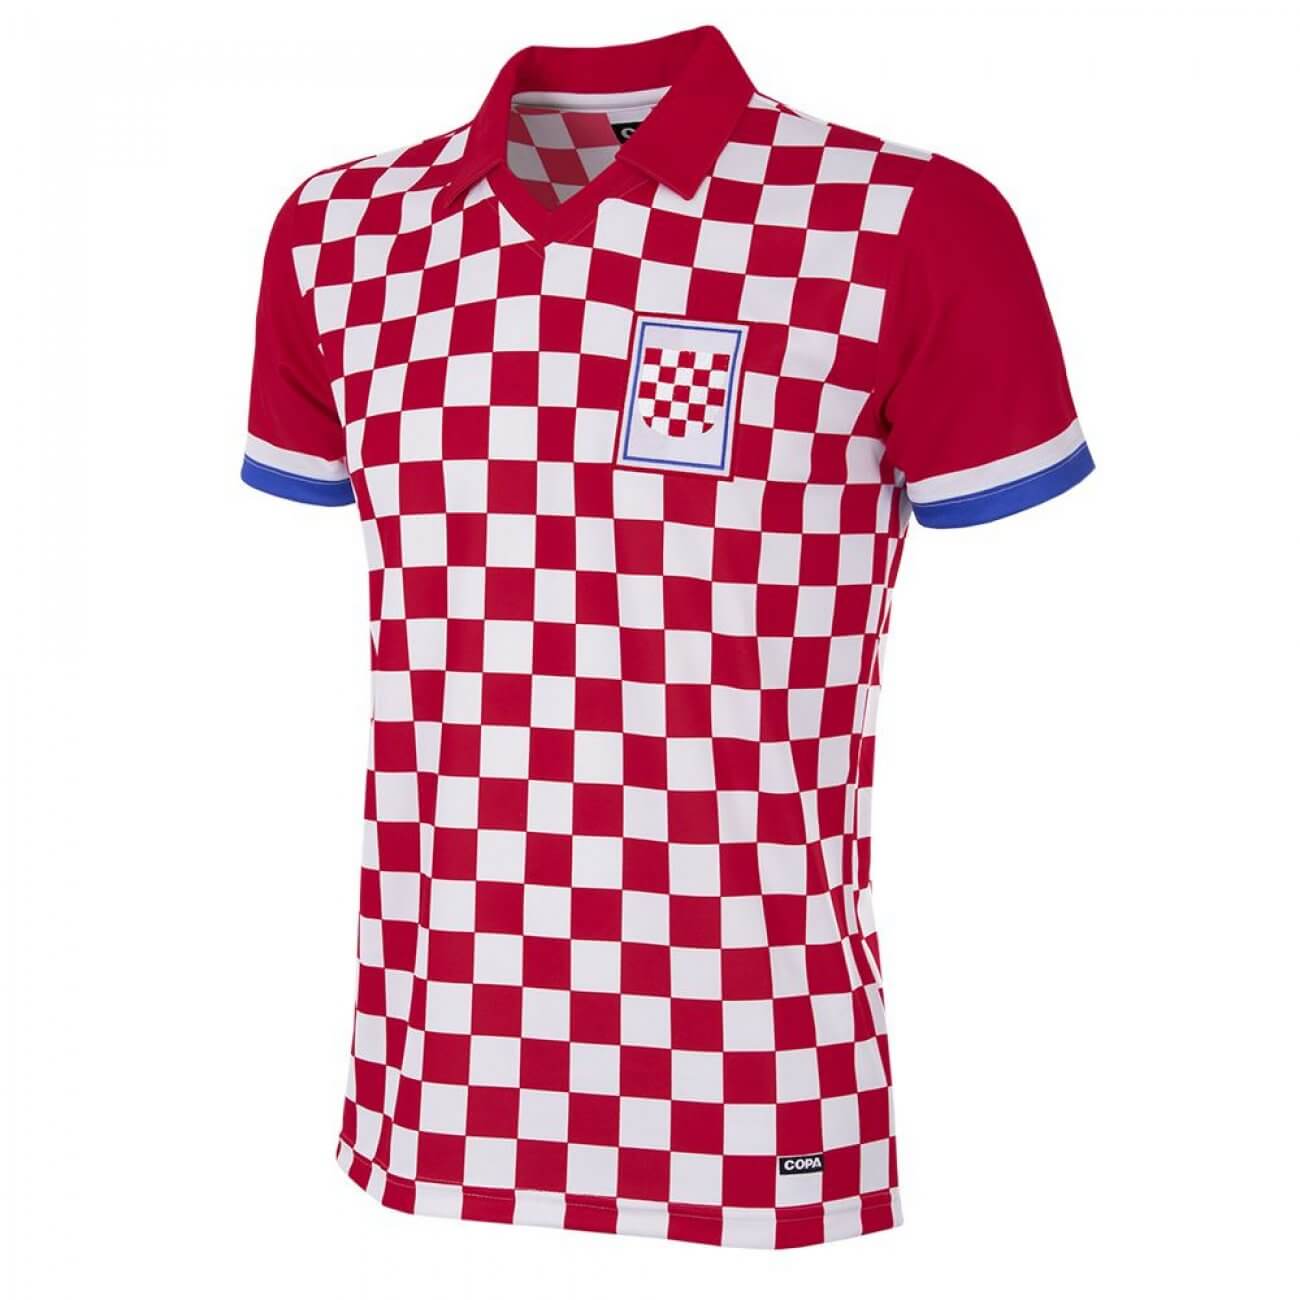 croatia team jersey